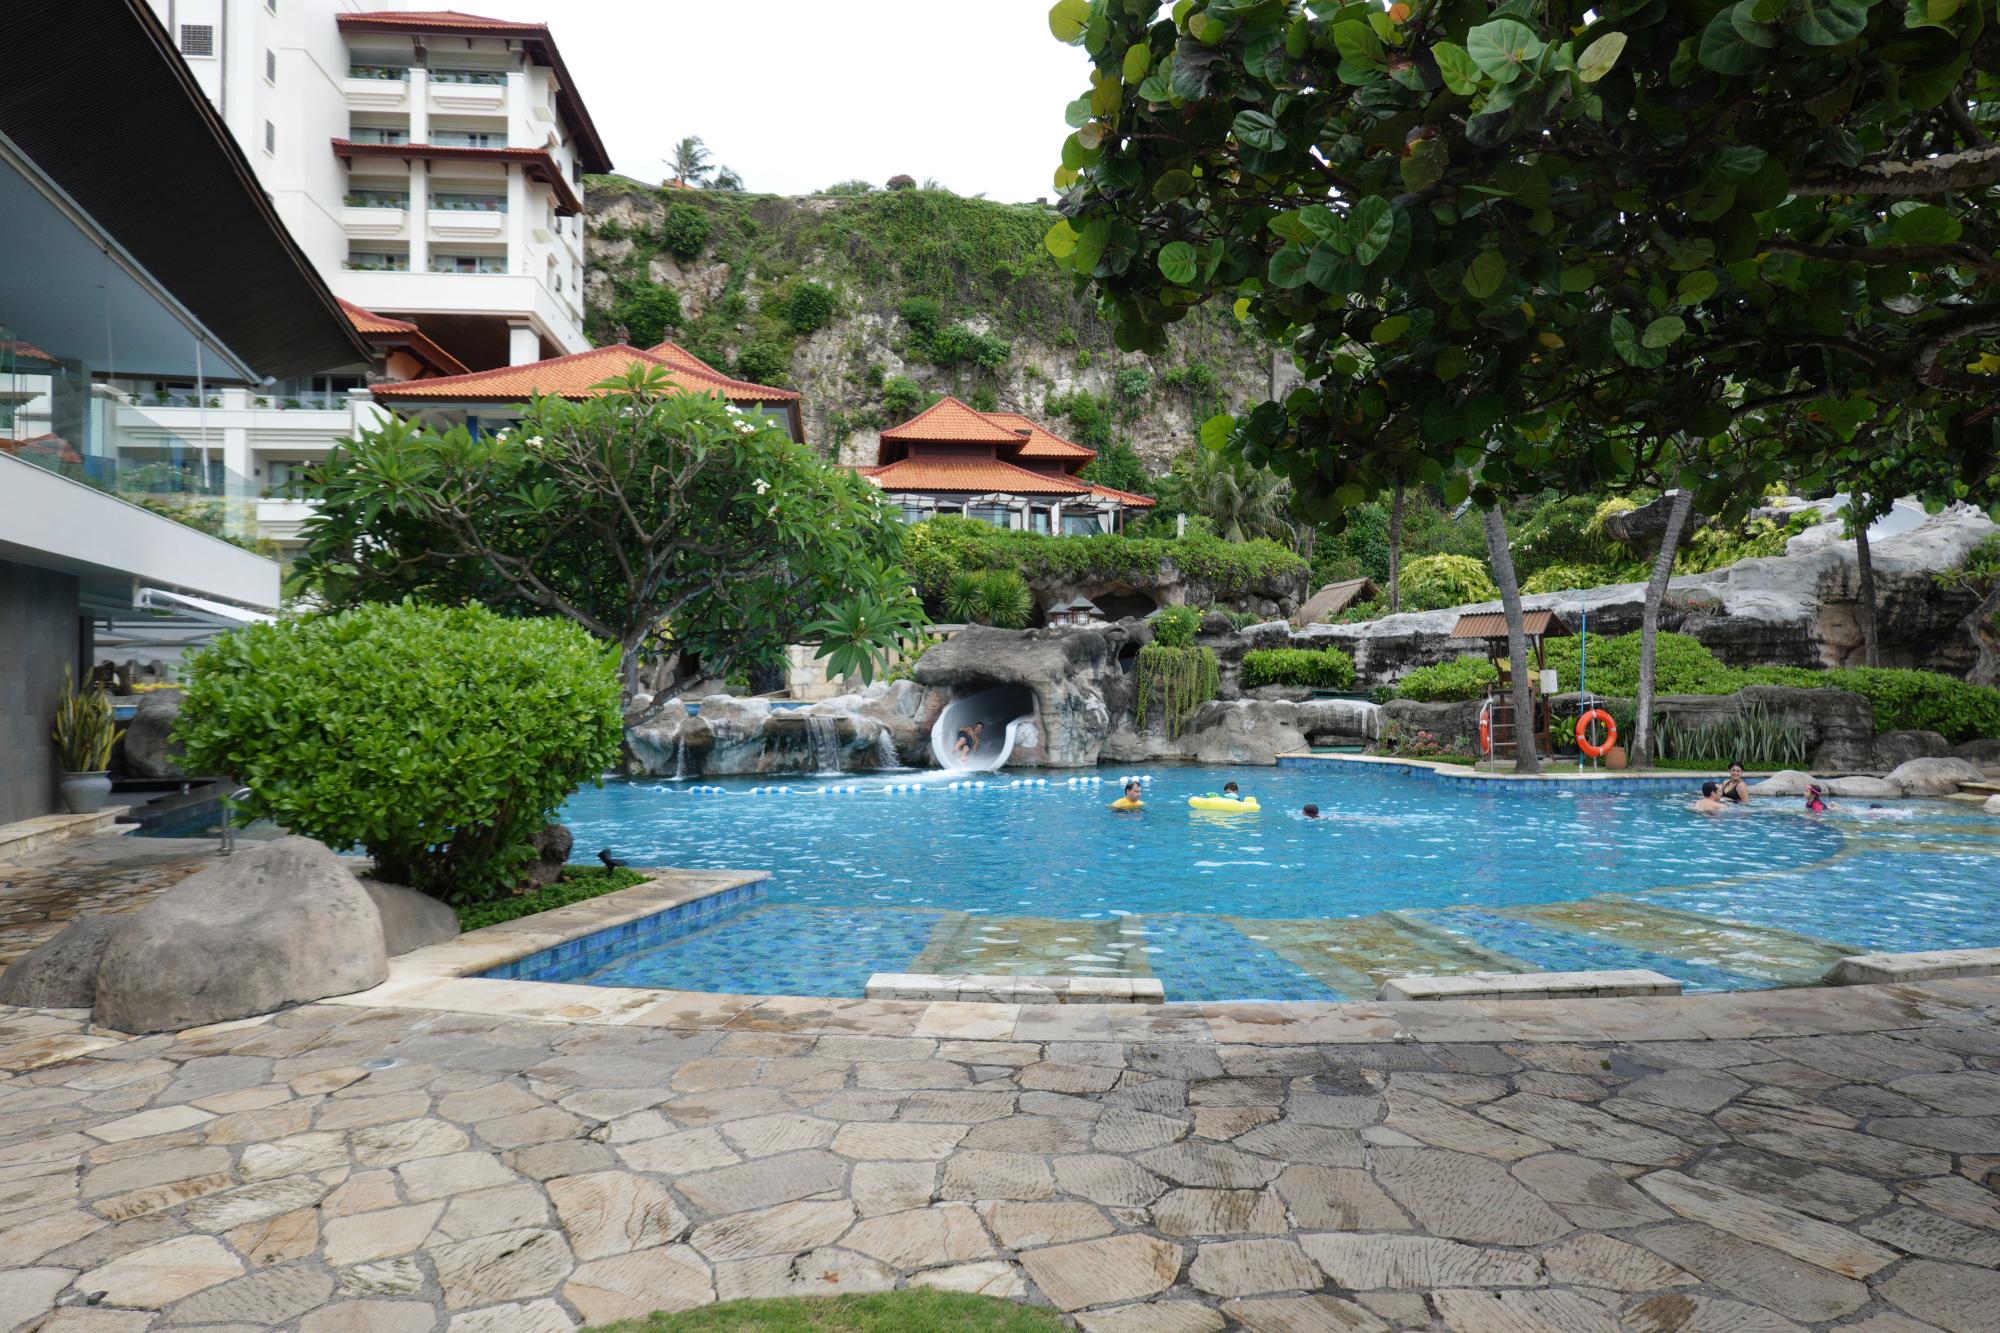 Bali - Hilton Pool #2